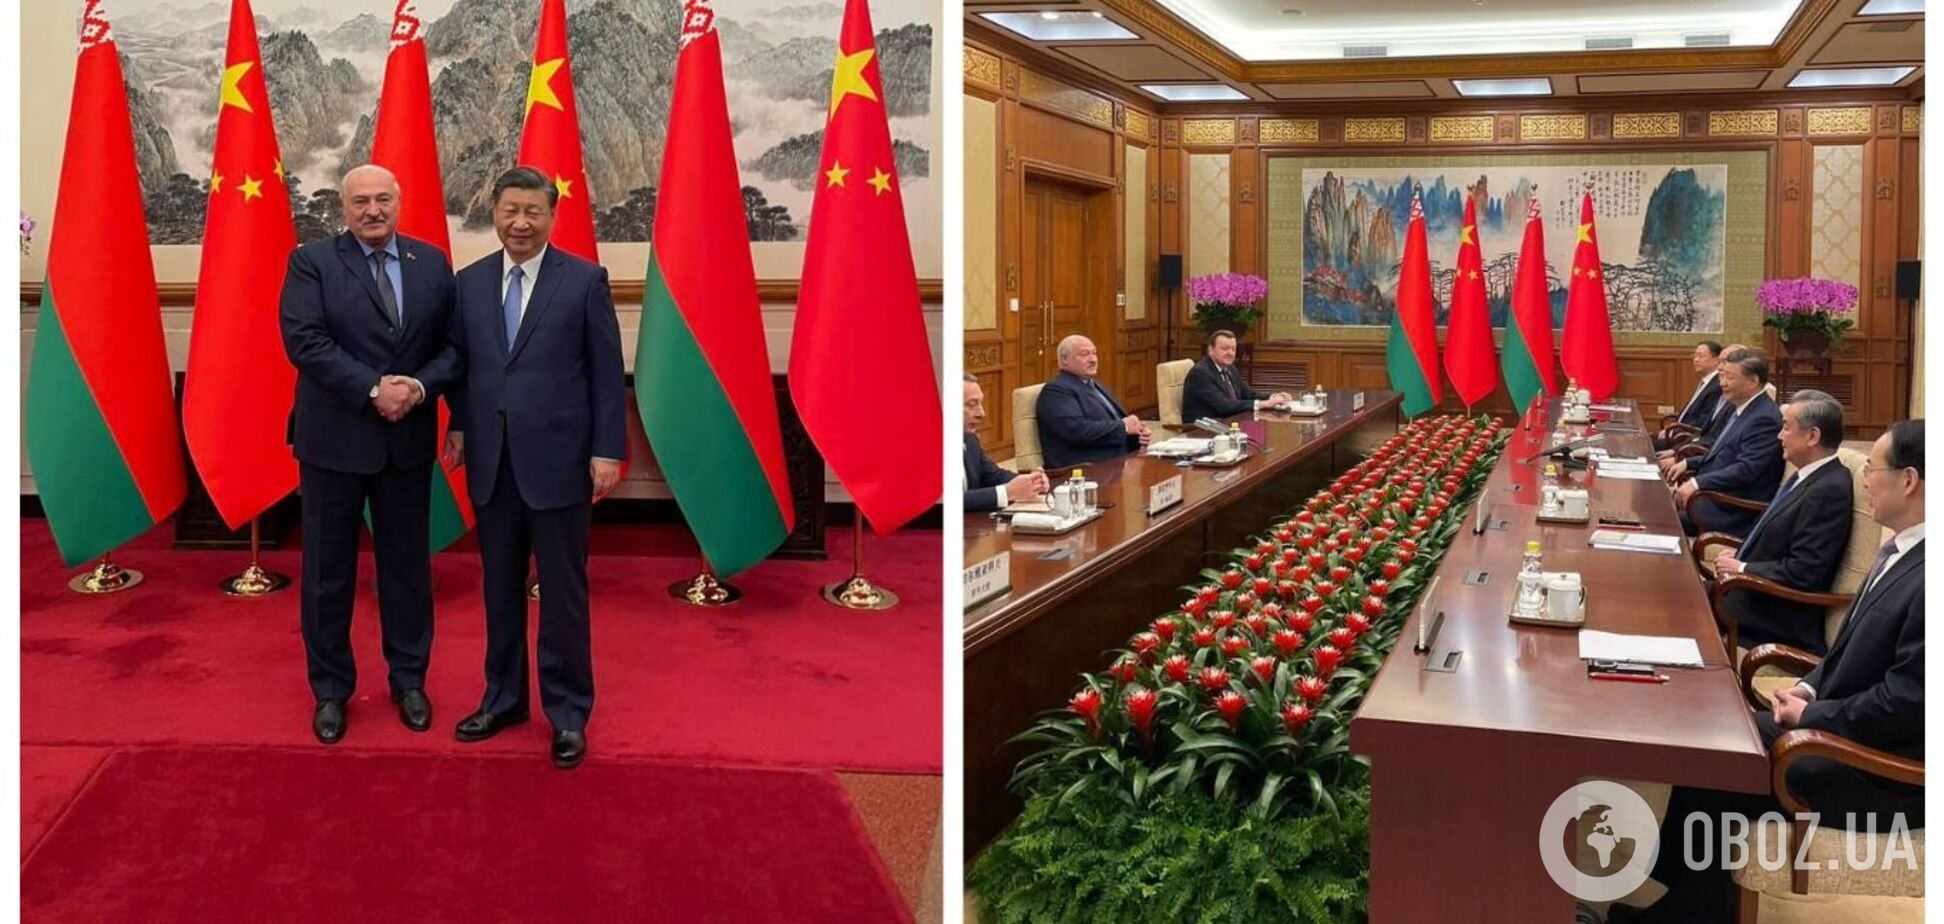 Лукашенко на встрече в Пекине назвал Си Цзиньпина другом, а тот заговорил о 'титанических изменениях' в мире. Видео